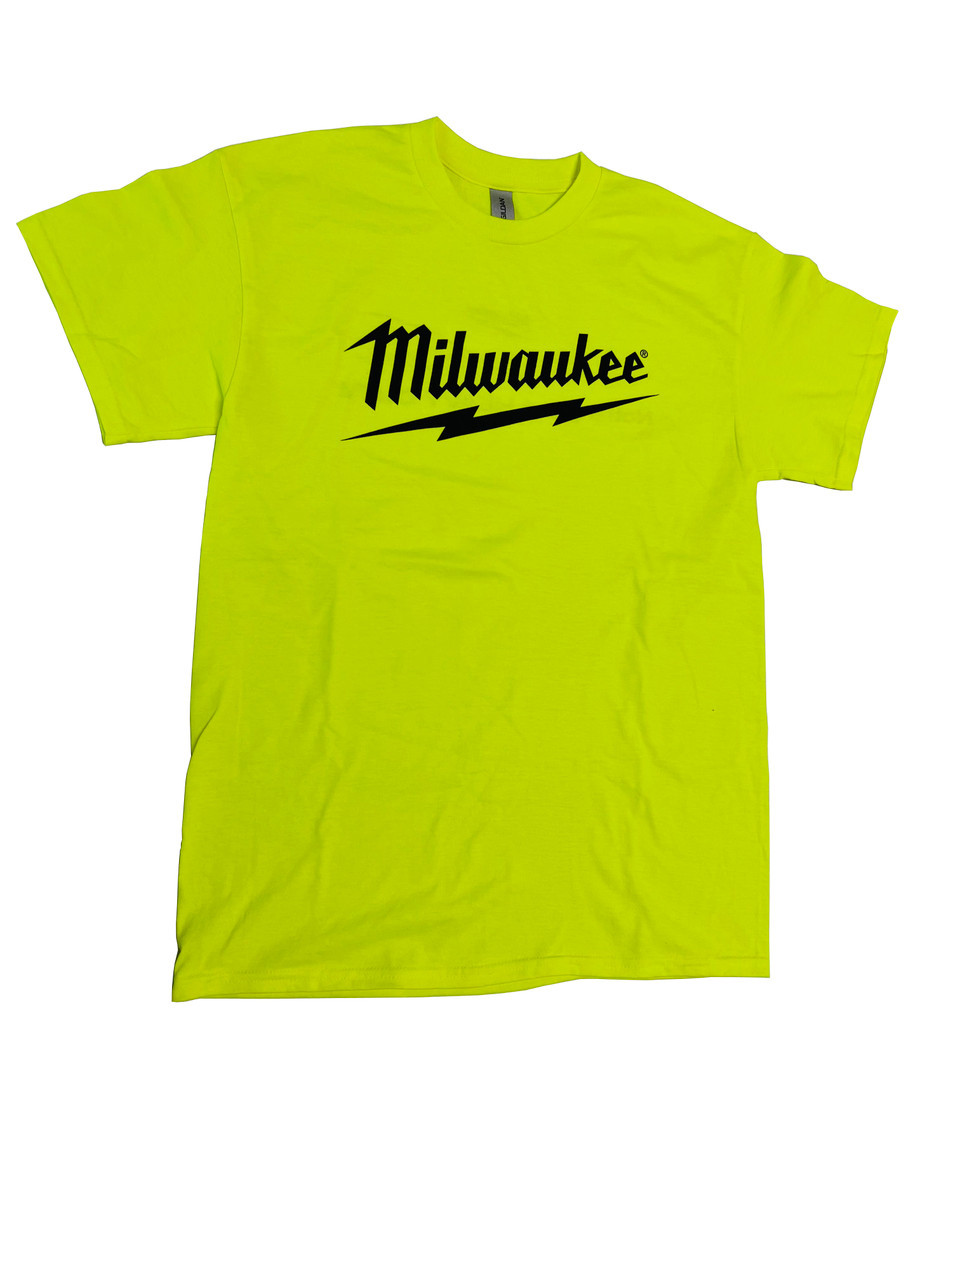 Milwaukee MWT154-XL Safety Green T-Shirt Size XL